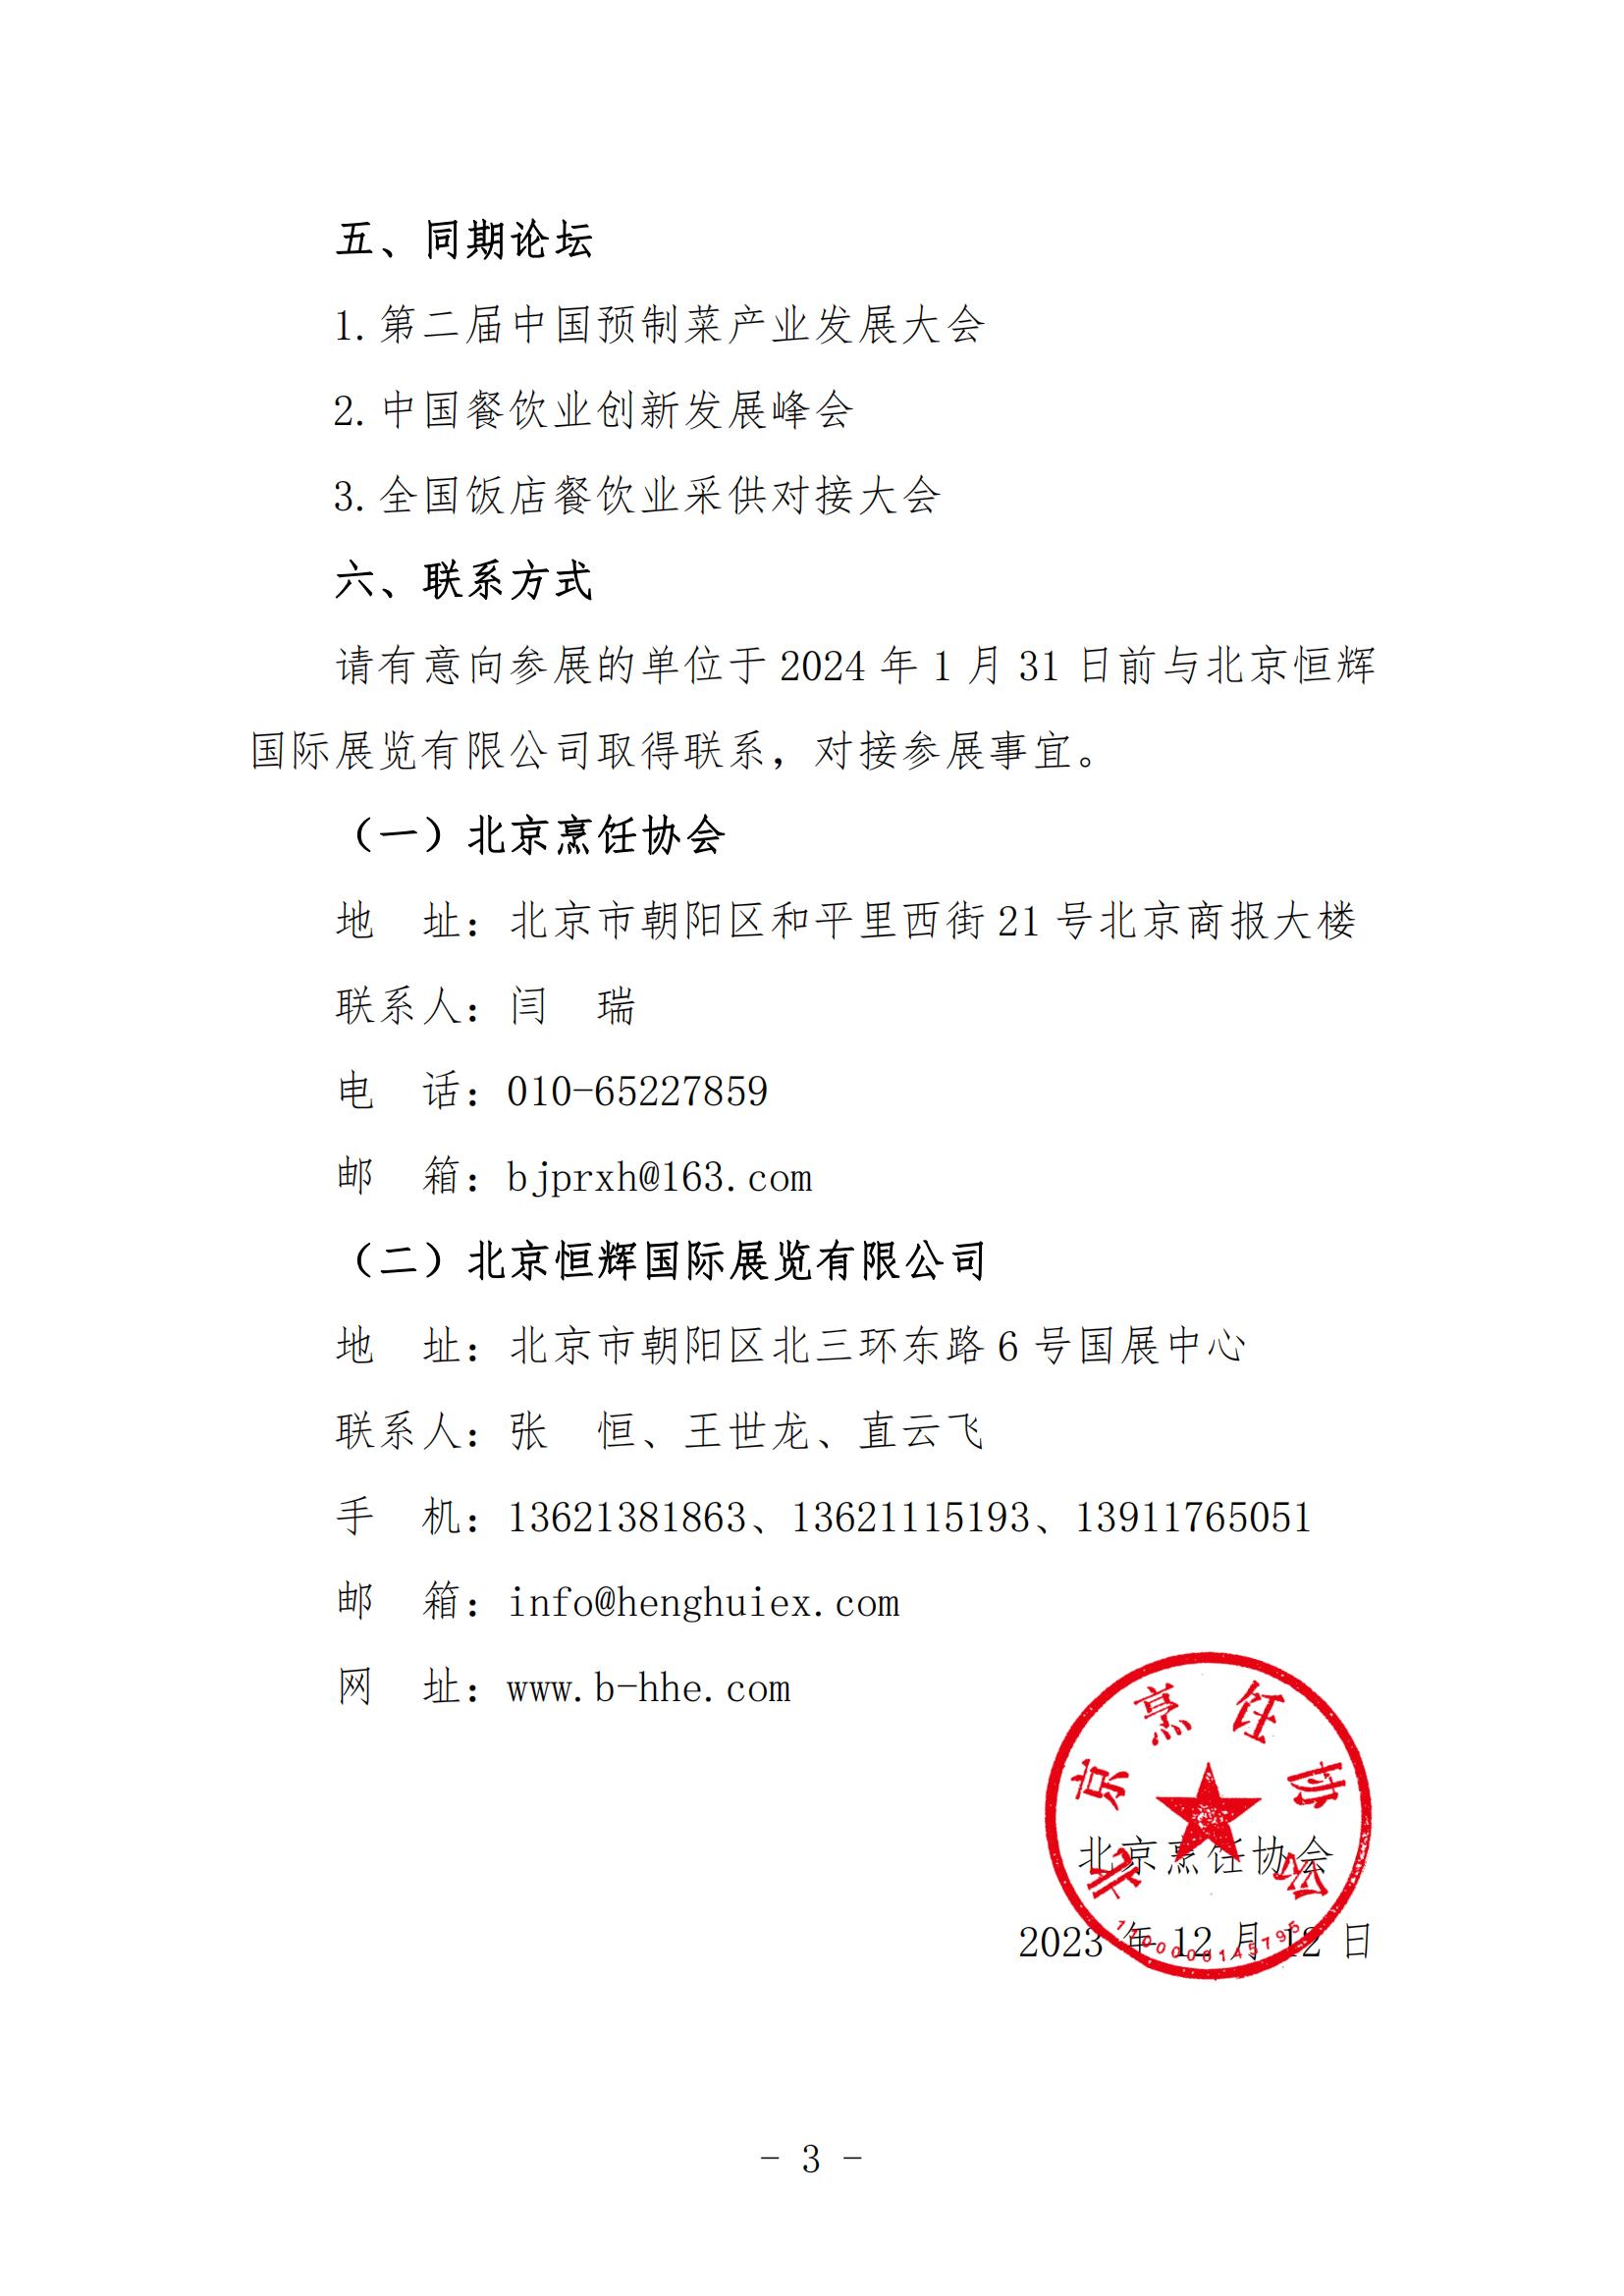 关于邀请参加第十四届北京国际餐饮业供应链展览会的函(图2)